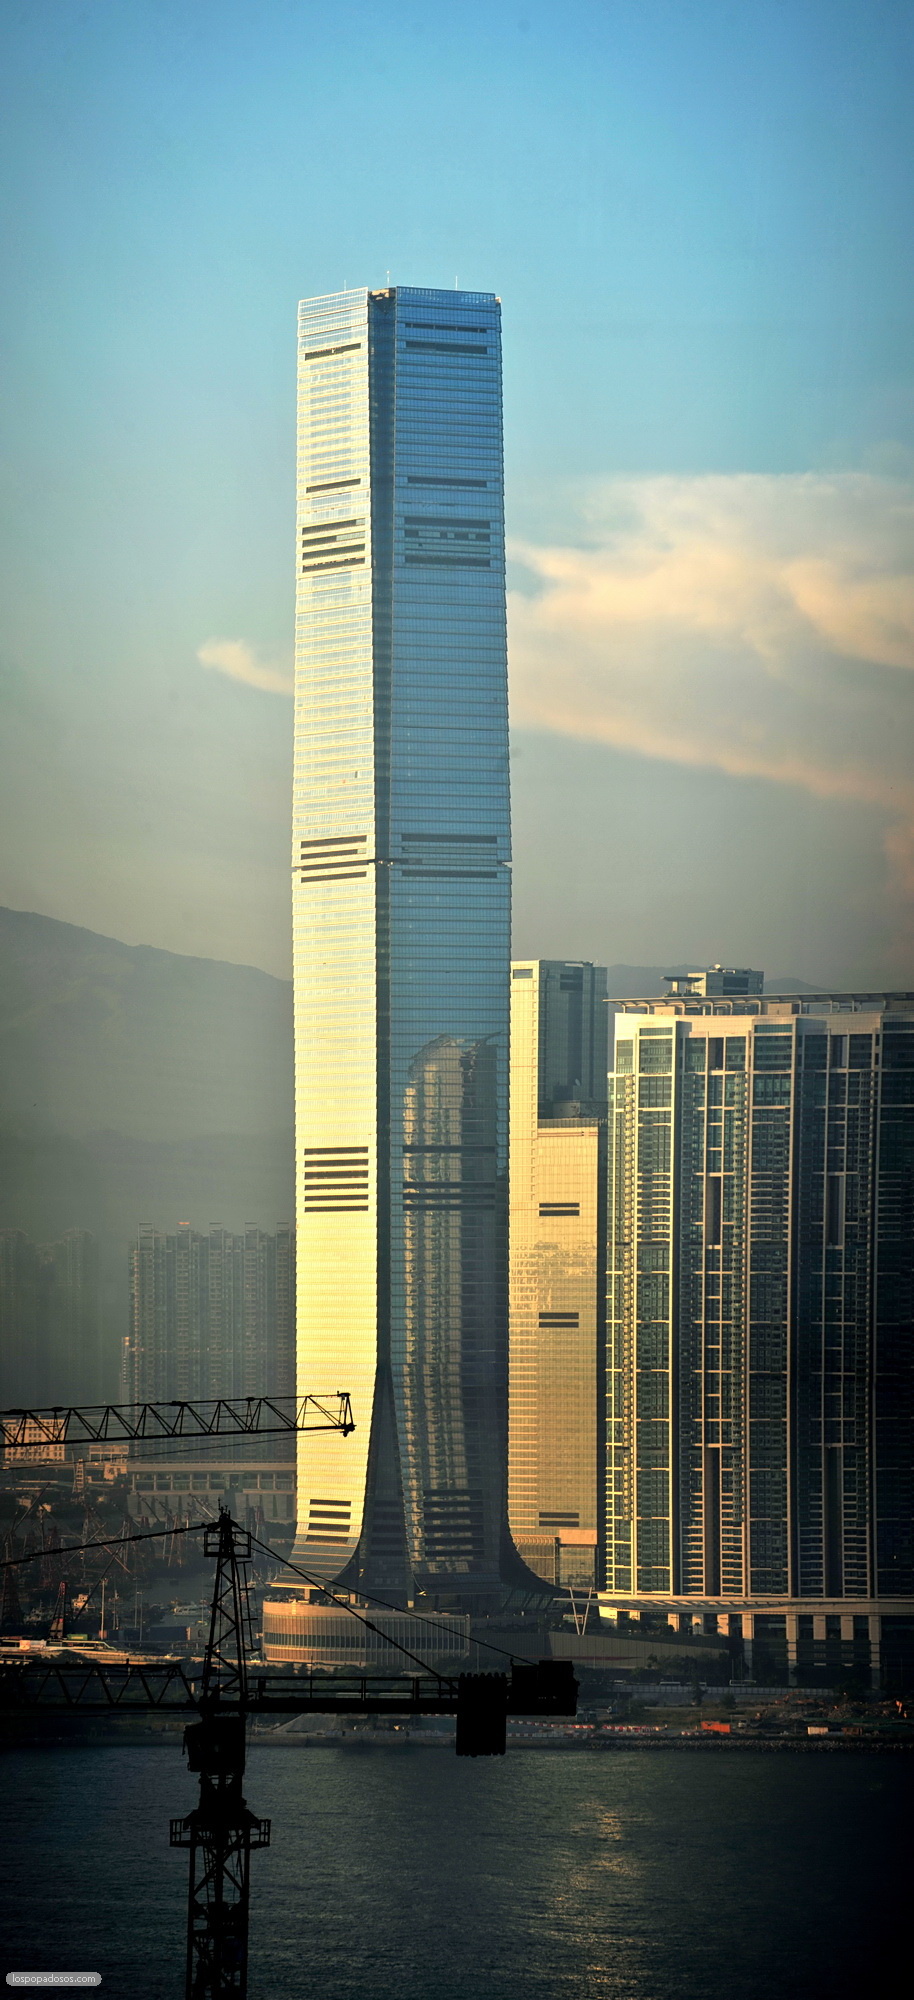 Hong Kong tallest tower